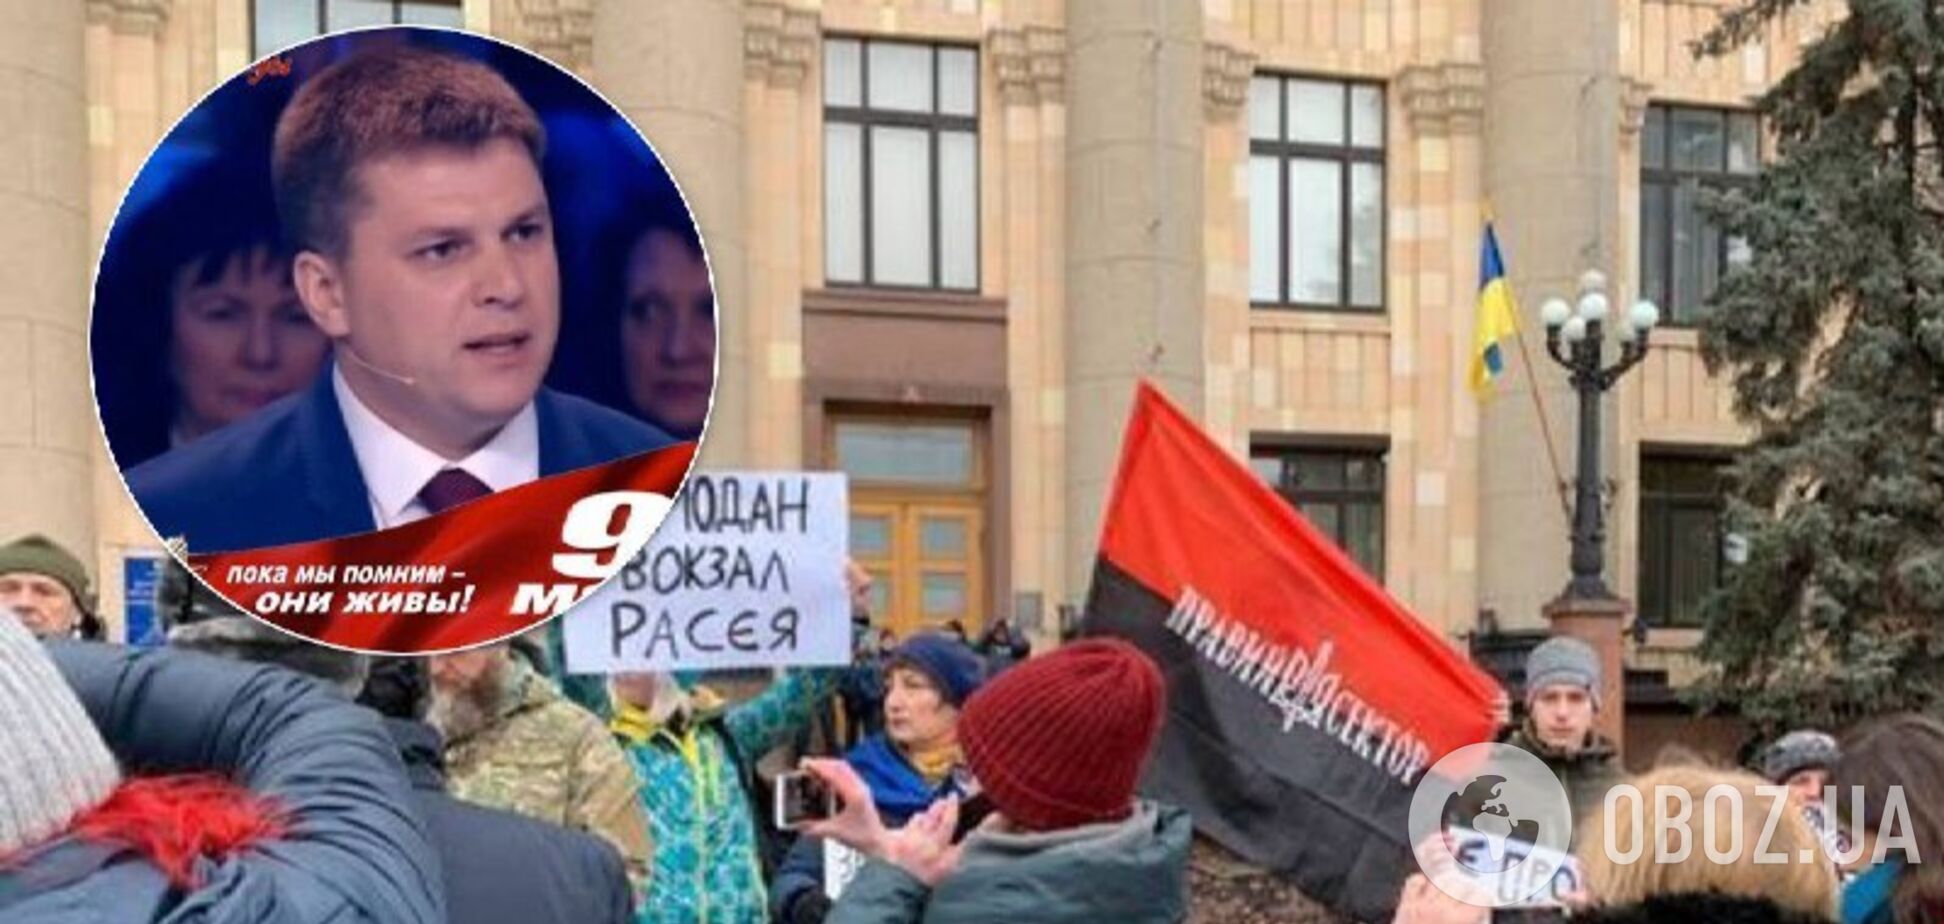 'Уй*буй звідси!' У Харкові ексдепутат зібрав мітинг за російську мову, але його закидали яйцями